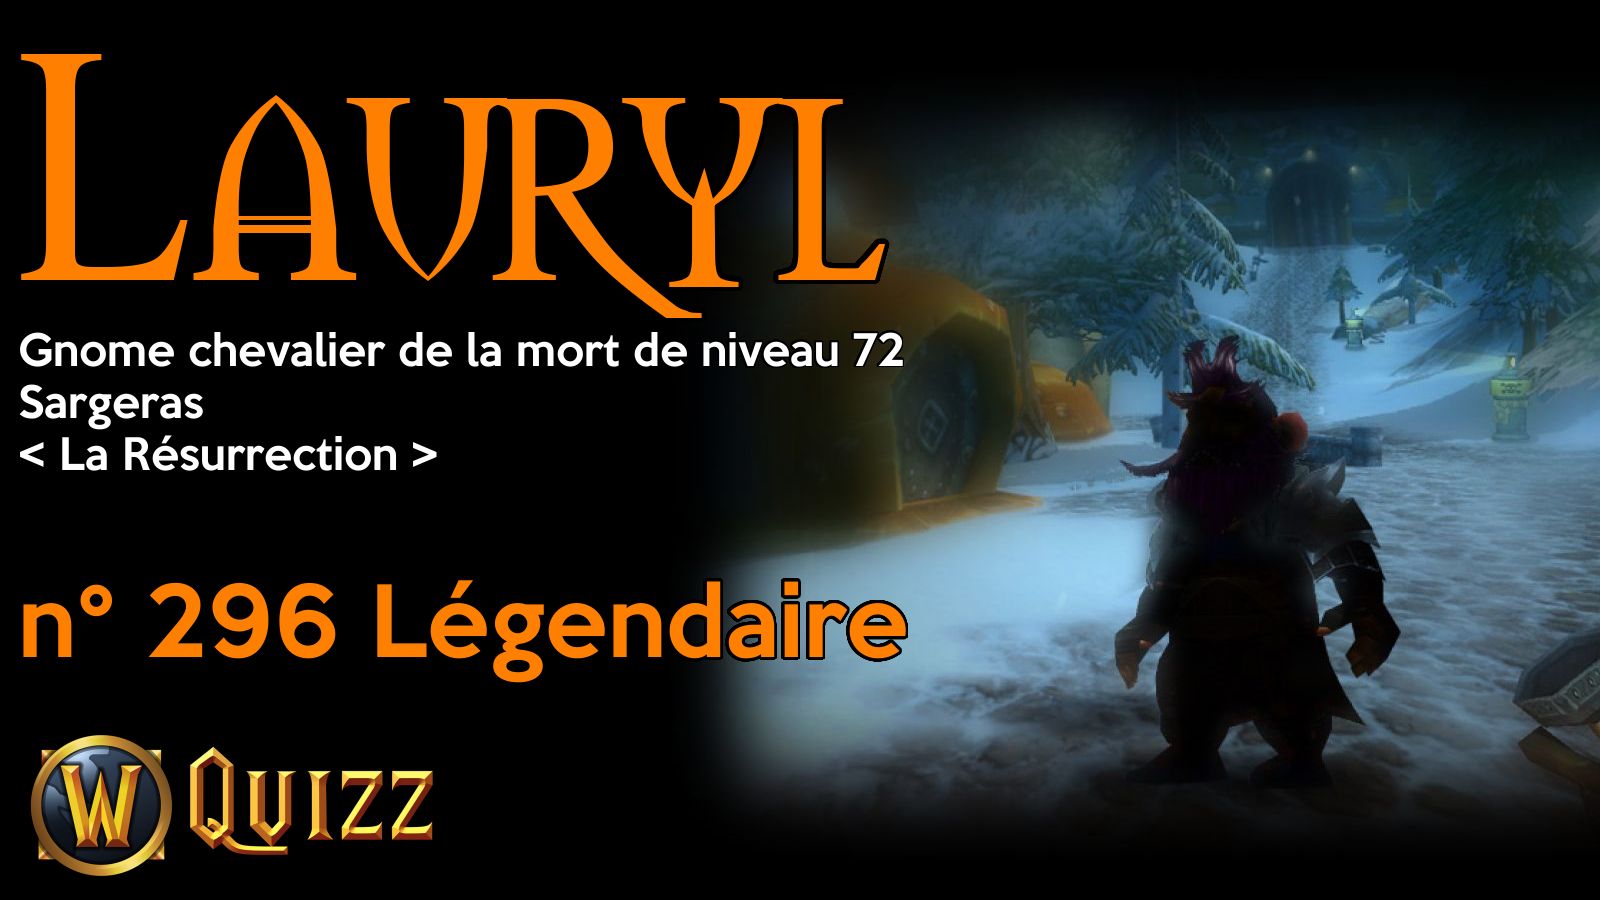 Lauryl, Gnome chevalier de la mort de niveau 72, Sargeras